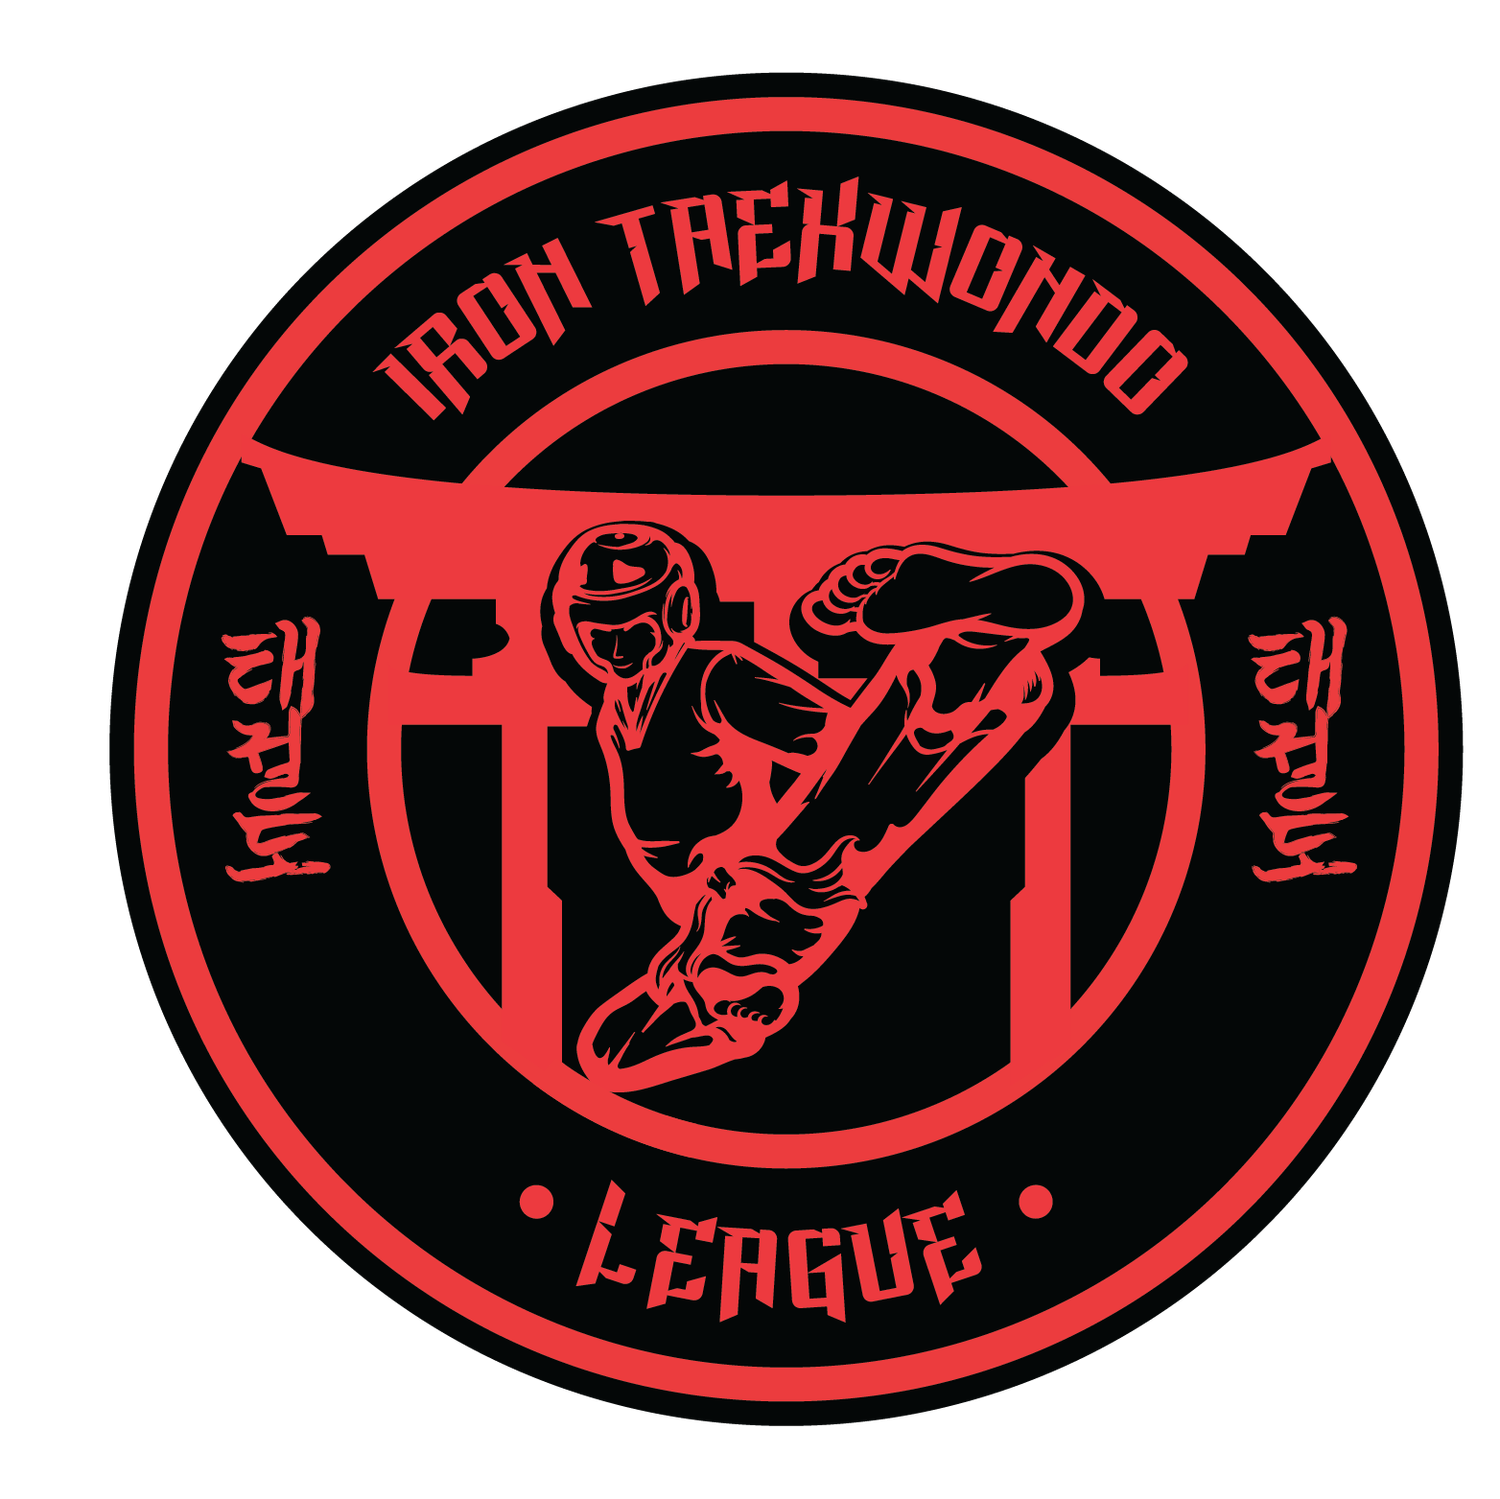 Iron Taekwondo League